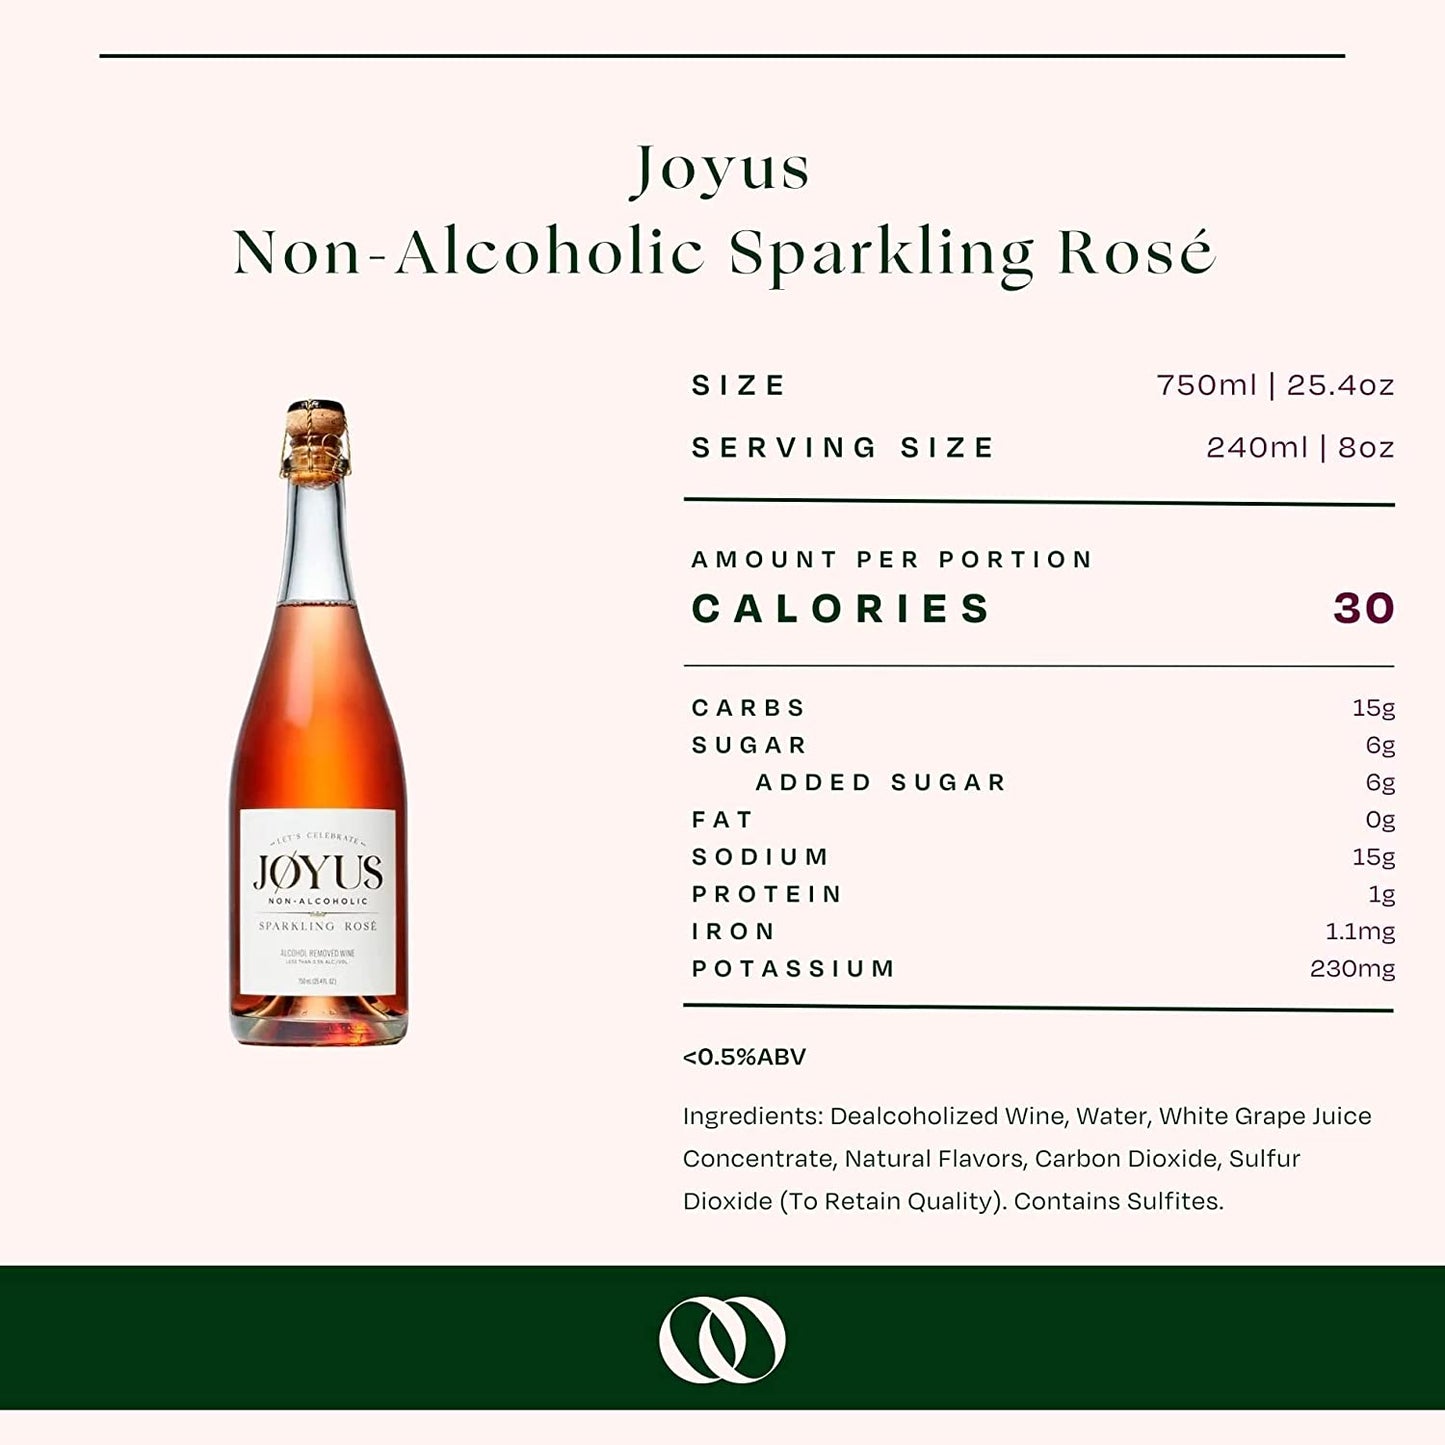 Joyus Non-Alcoholic Sparkling Rose